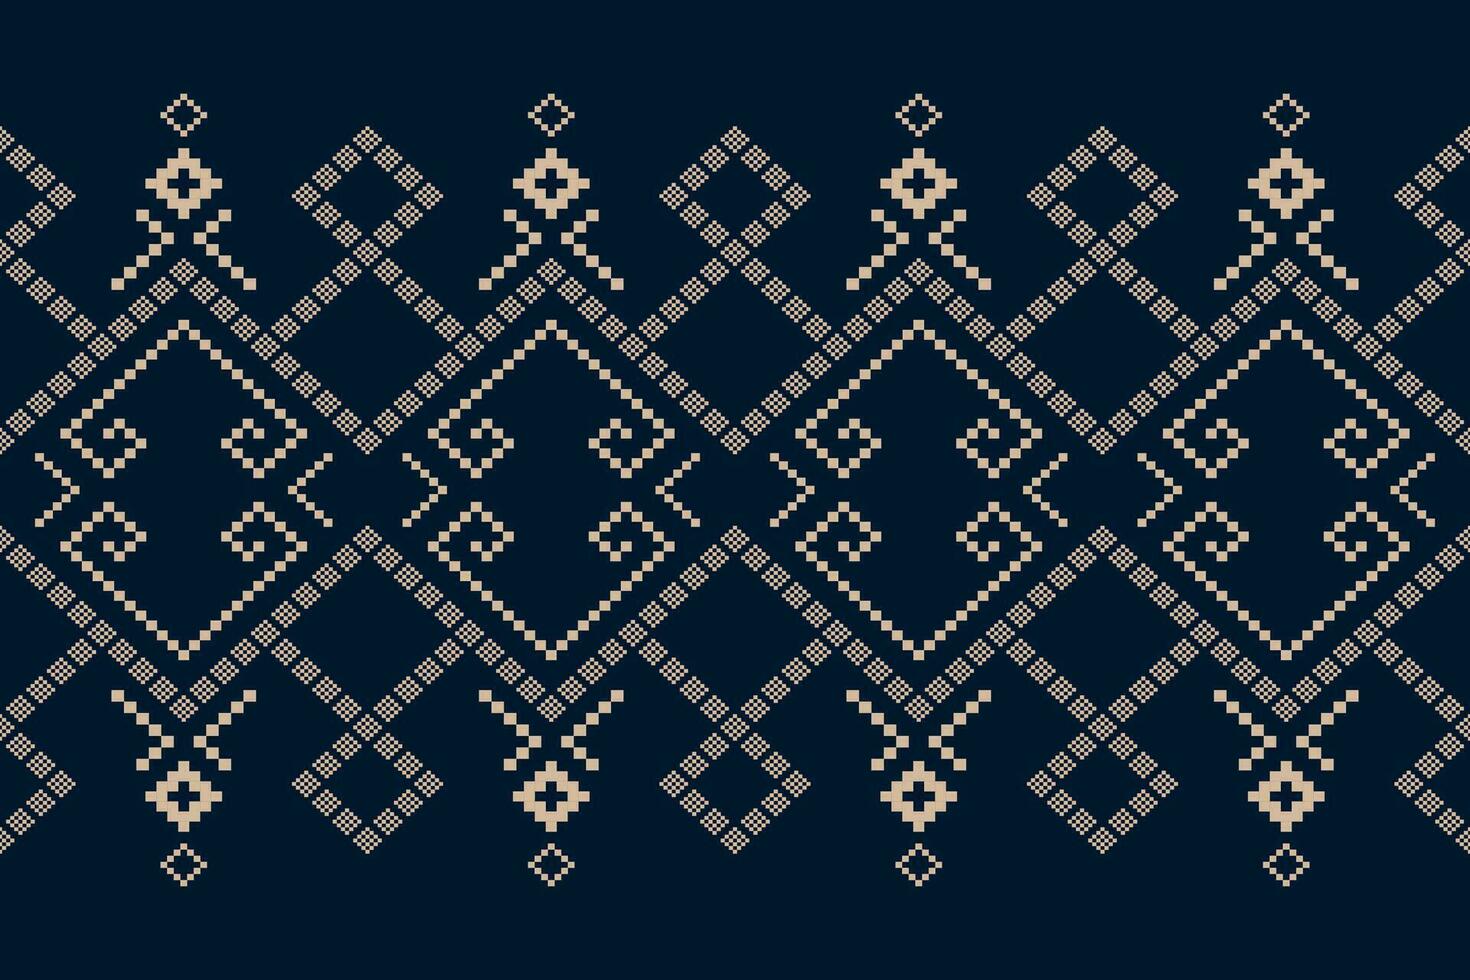 indigo marine blauw meetkundig traditioneel etnisch patroon ikat naadloos patroon abstract ontwerp voor kleding stof afdrukken kleding jurk tapijt gordijnen en sarong aztec Afrikaanse Indisch Indonesisch vector